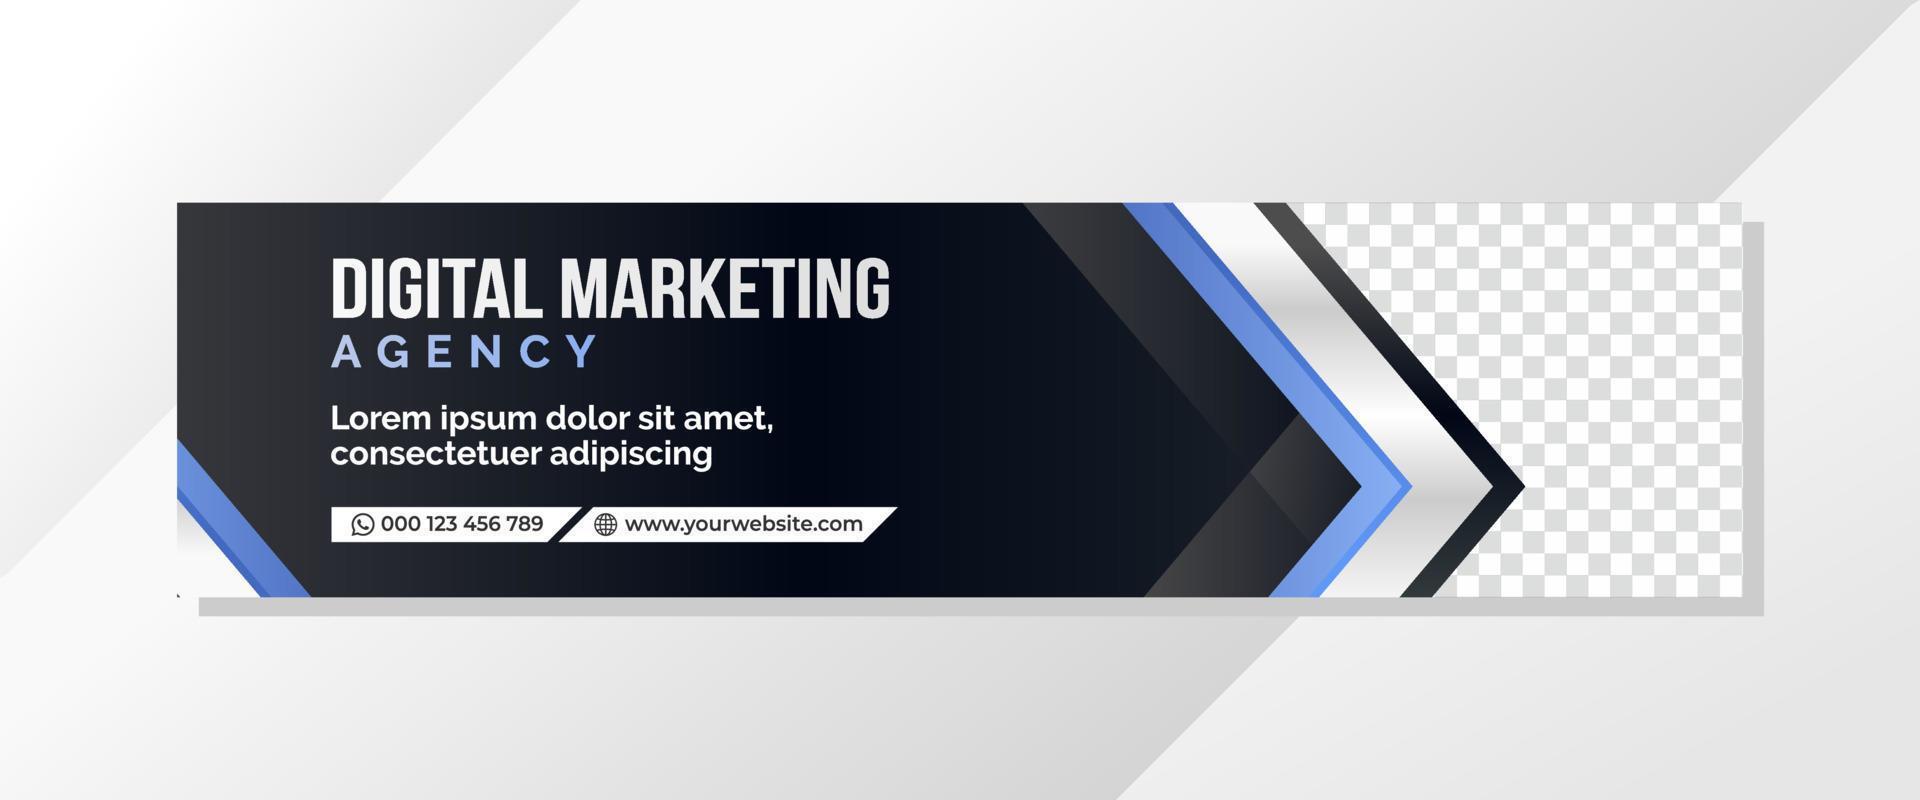 Banner-Vorlage für digitales Marketing vektor